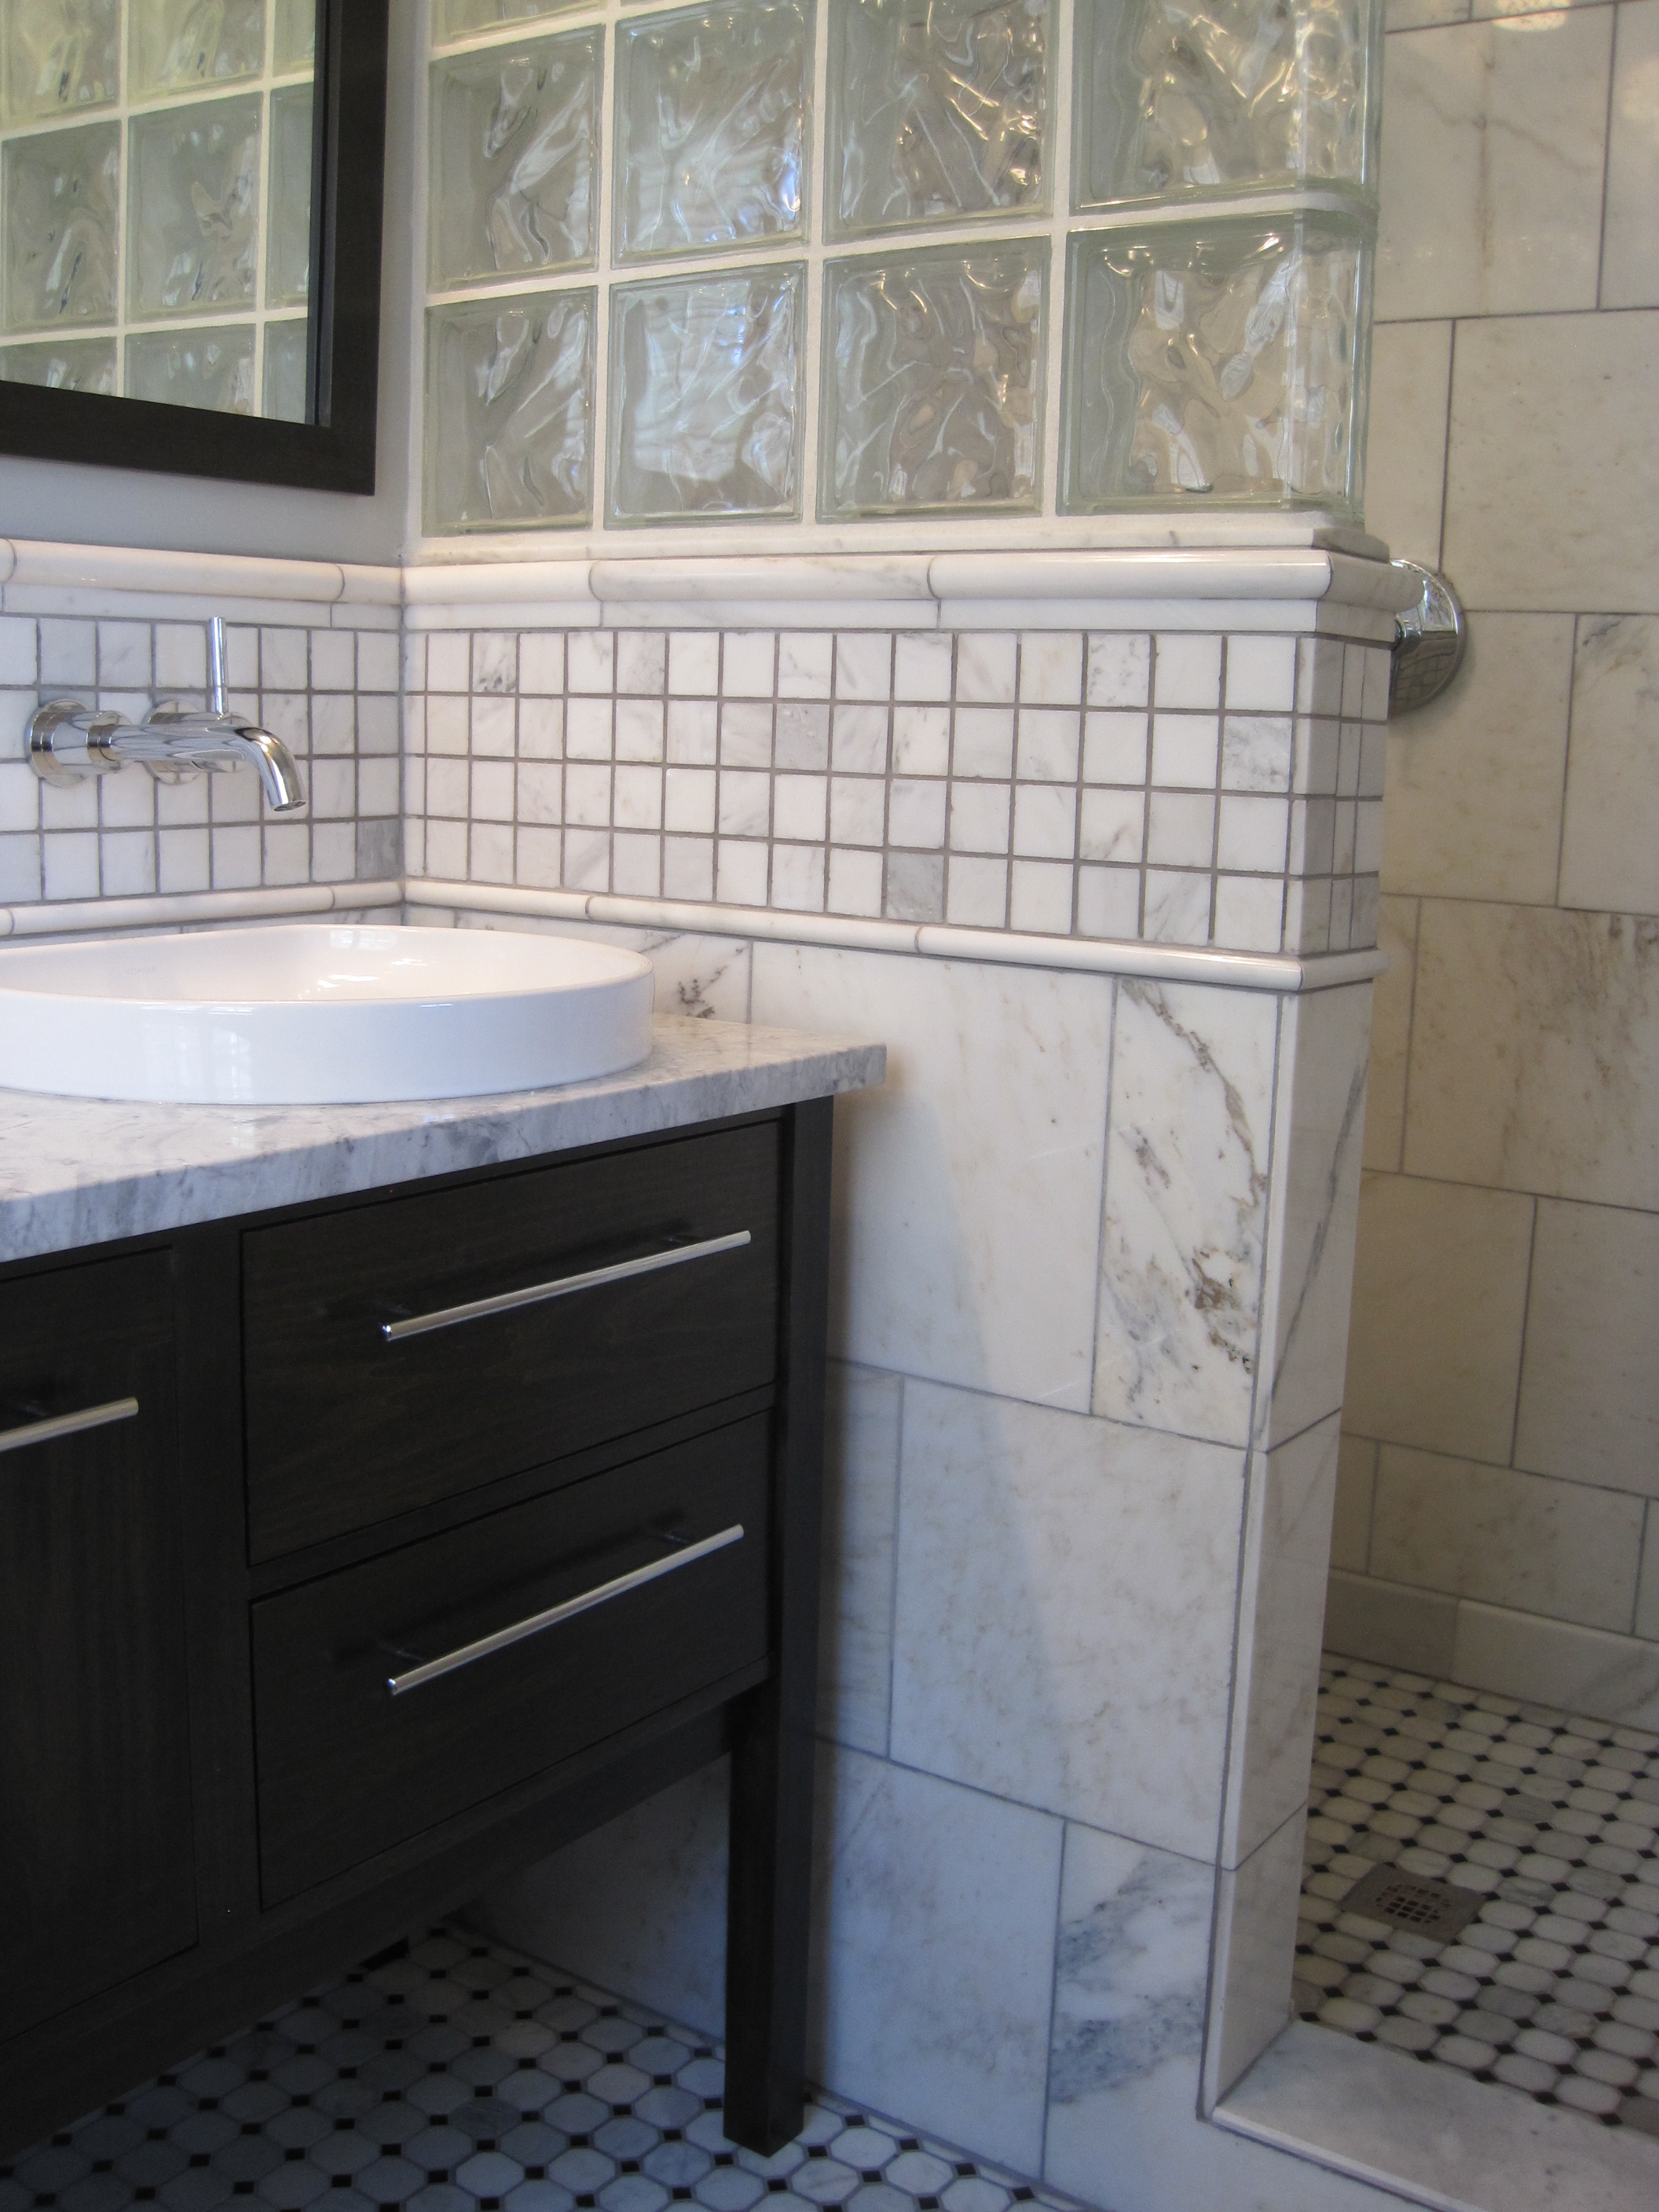 A Small Bathroom - flourish 4 Inch Gap Between Vanity And Wall